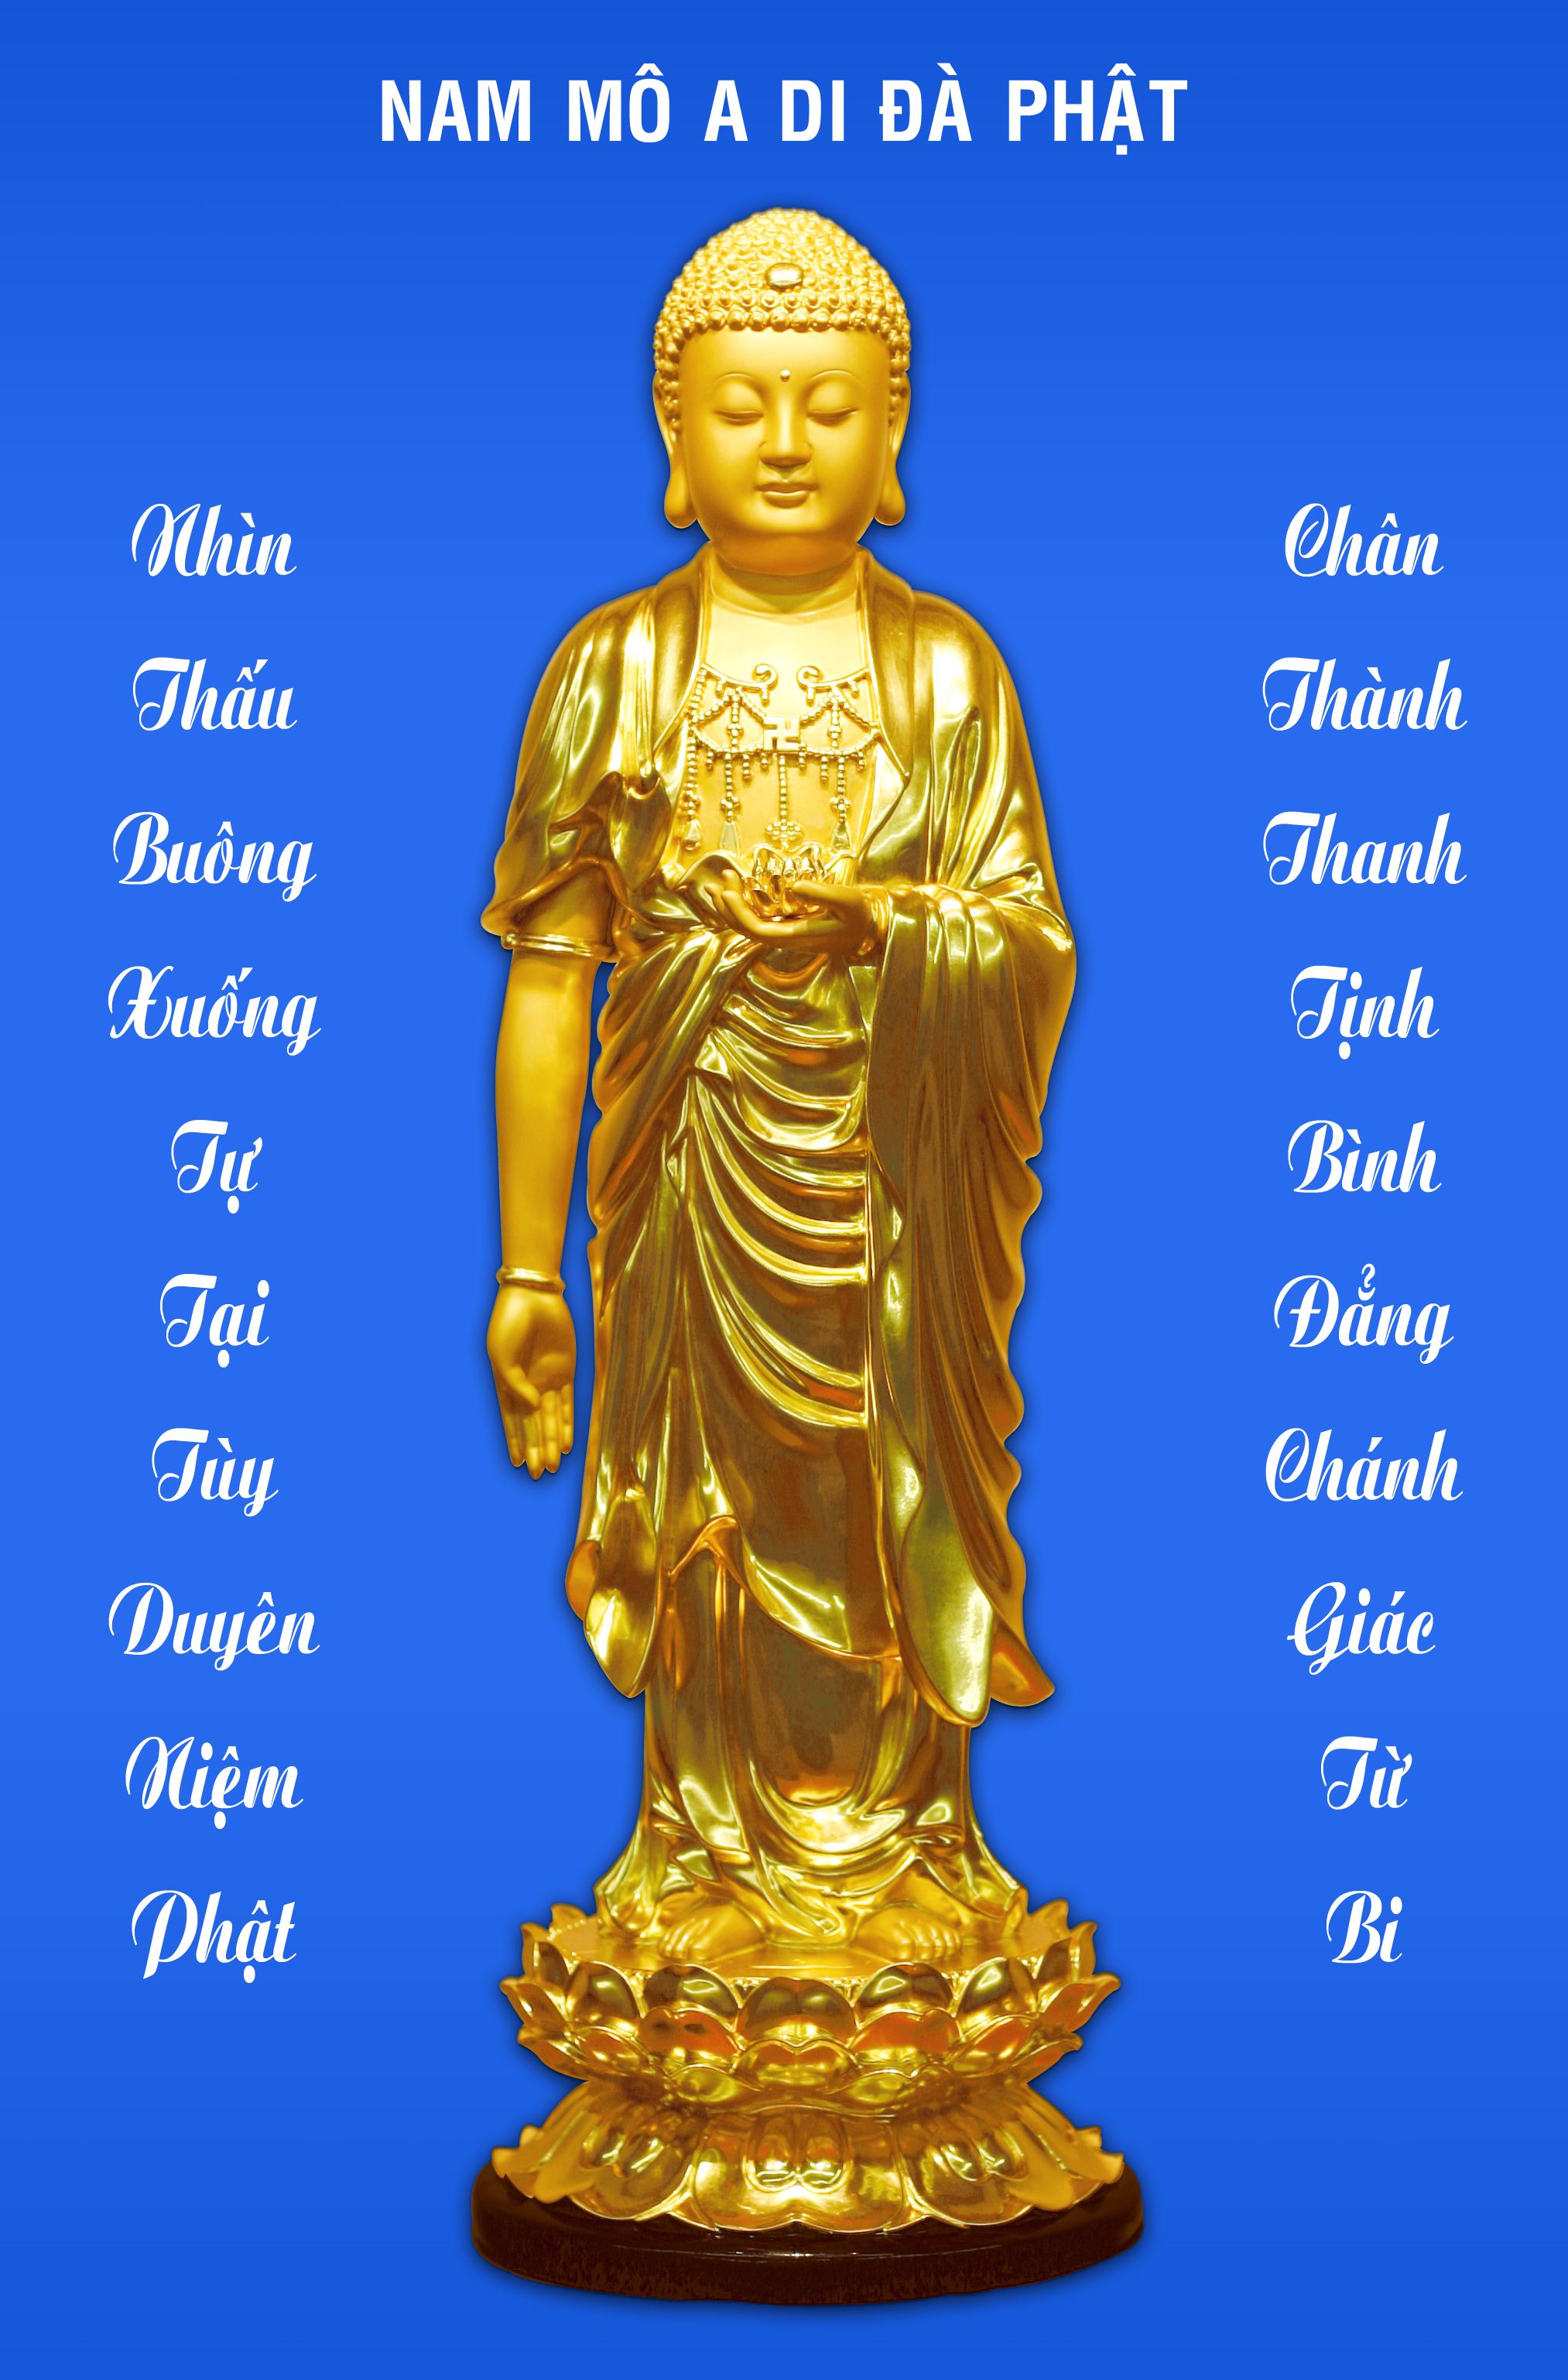 Một số hình ảnh nam mô a di đà phật đẹp và ý nghĩa nhất để cầu nguyện và tâm đắc tín đồ Phật giáo